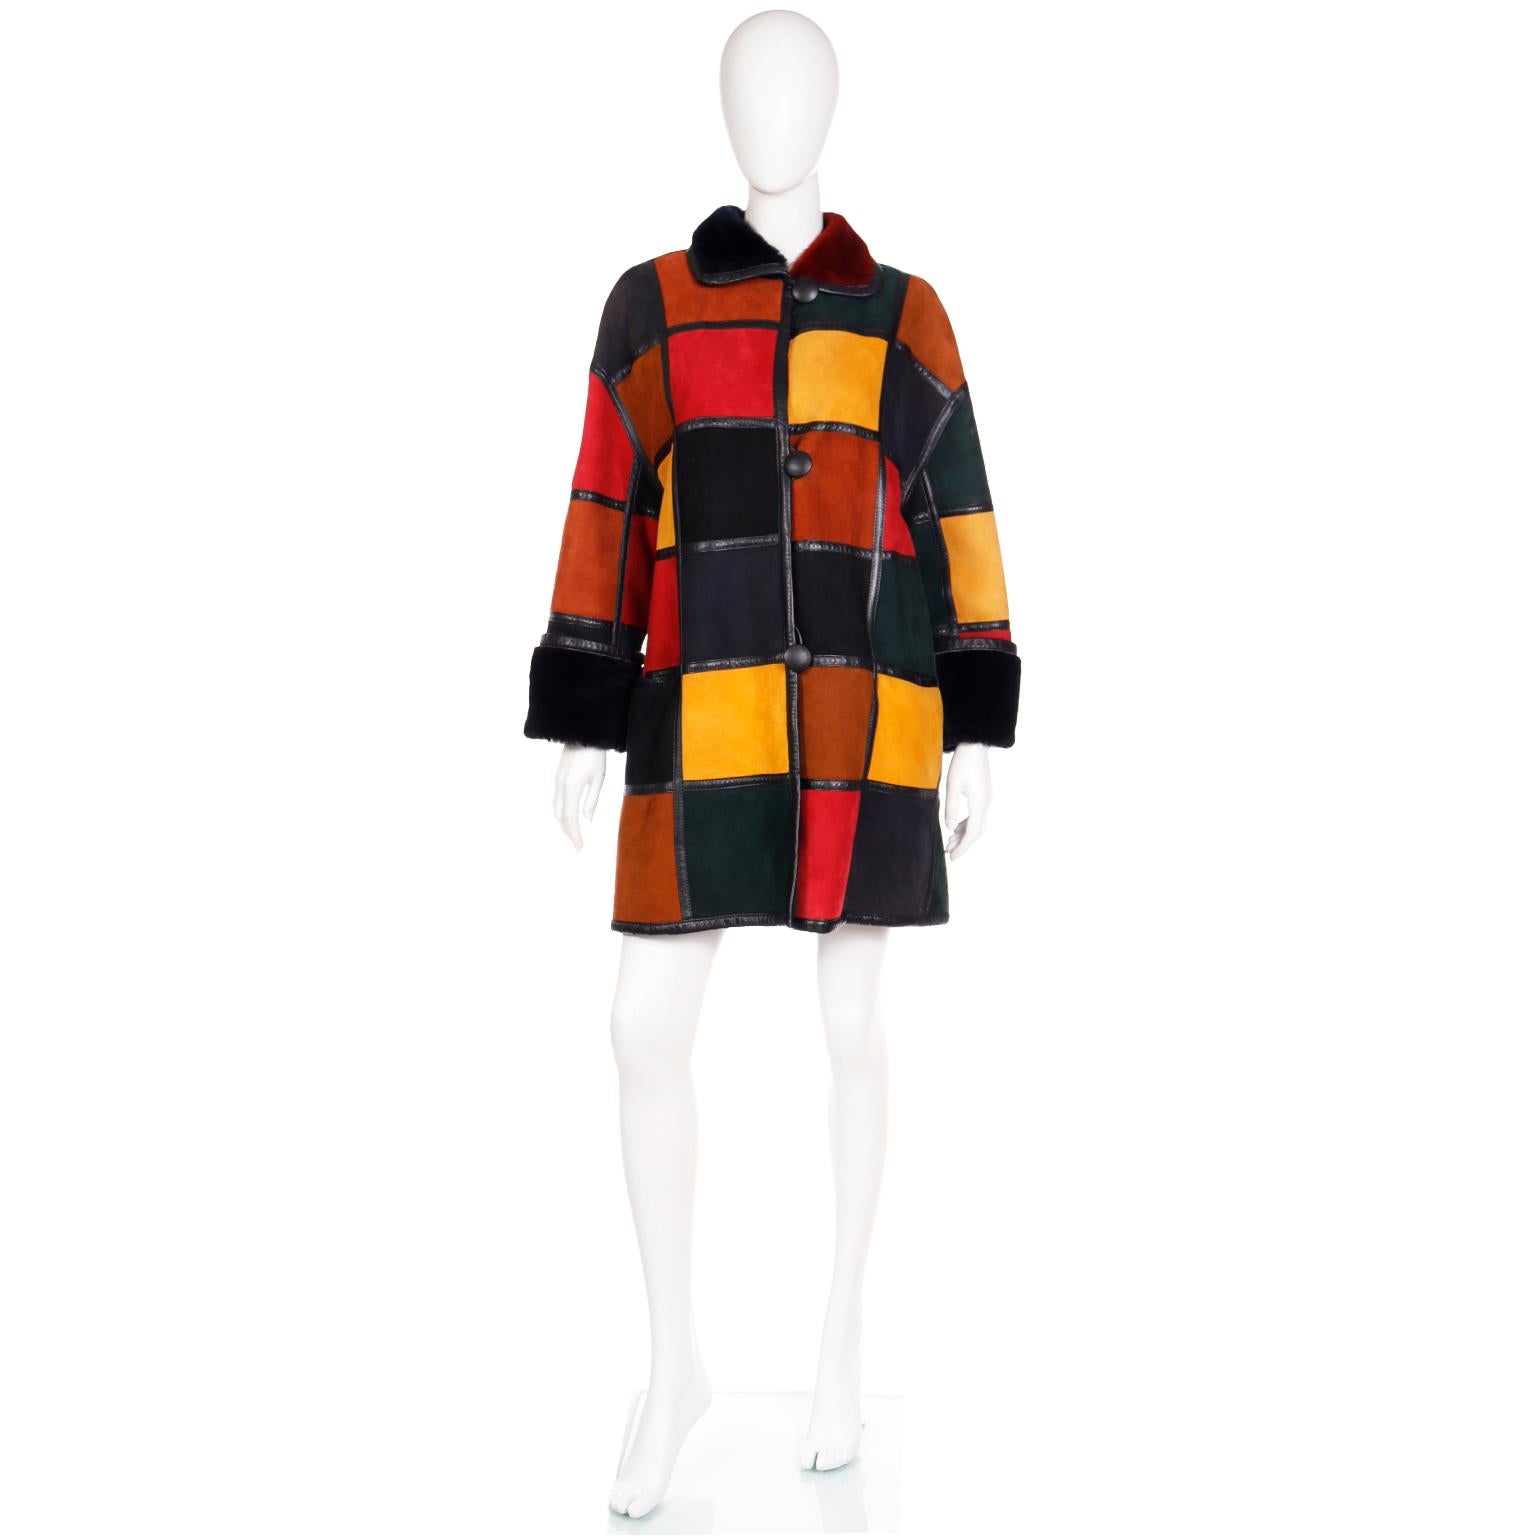 Cet époustouflant manteau vintage de Donna Karan présente un style patchwork avec des blocs de couleur dans des tons orange rouille, rouge, noir et jaune, délimités par des bordures en cuir noir. Un côté du manteau est en luxueux shearling d'agneau